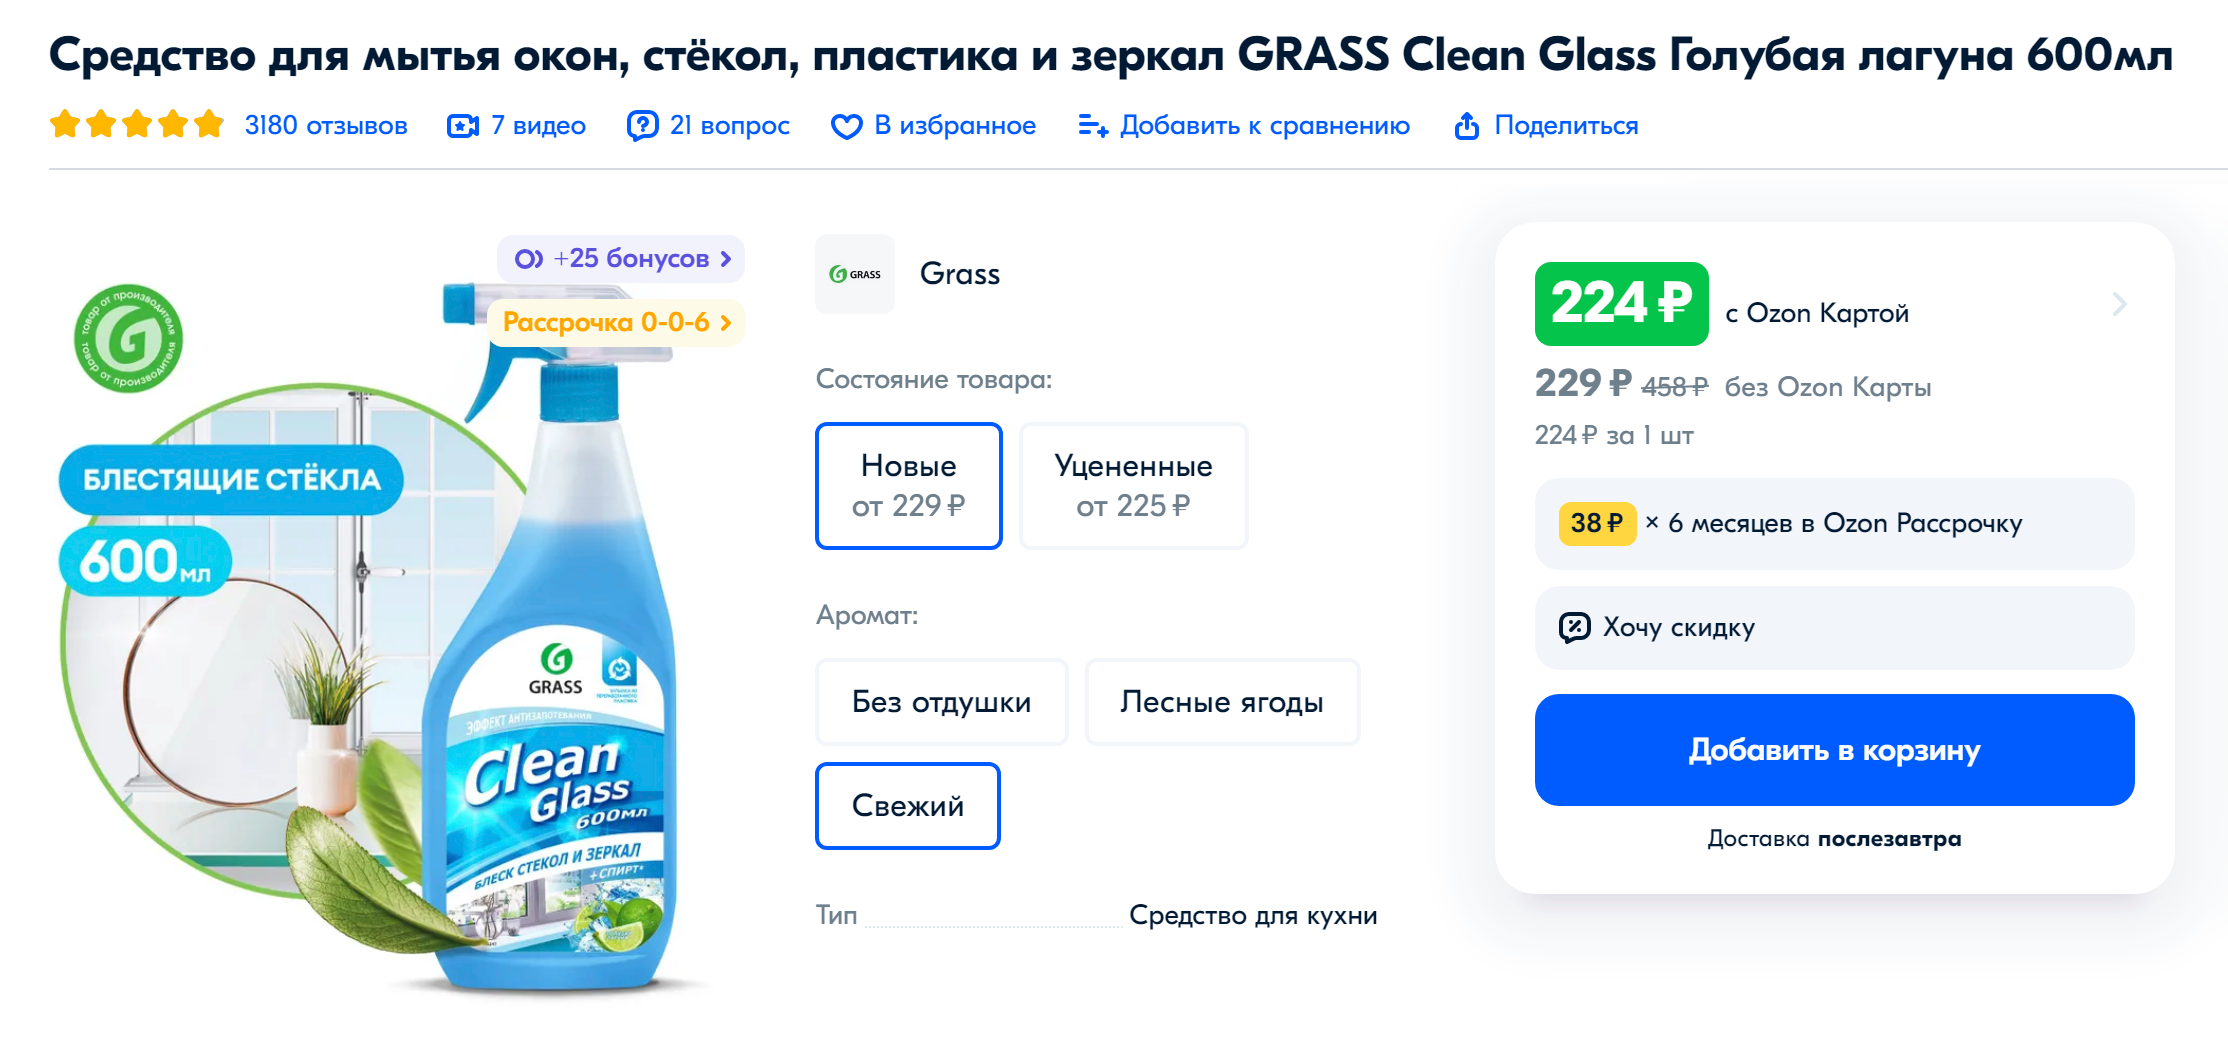 Например, мне нравится спрей для стекол и зеркал марки Grass. Источник: ozon.ru